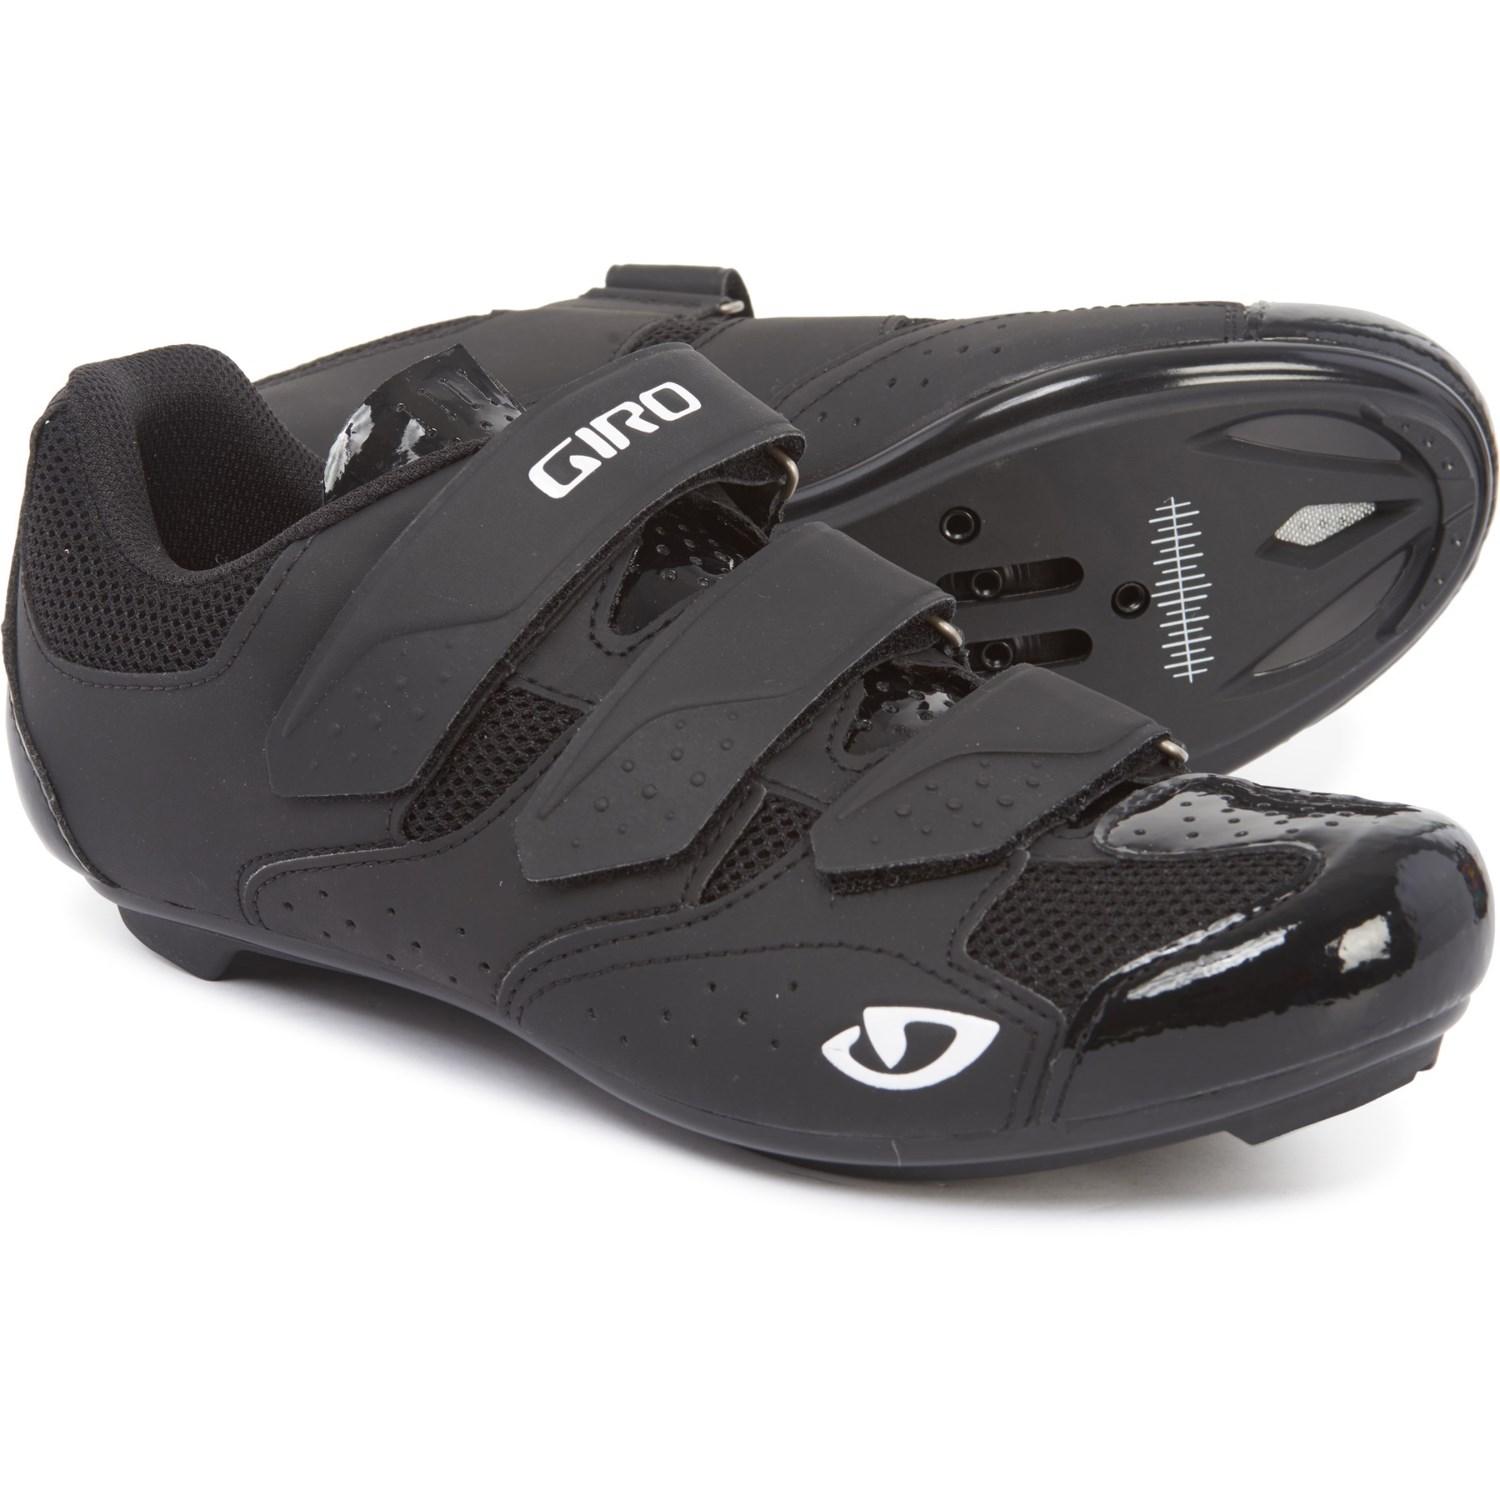 Giro Skion Ii Cycling Shoes in Black 